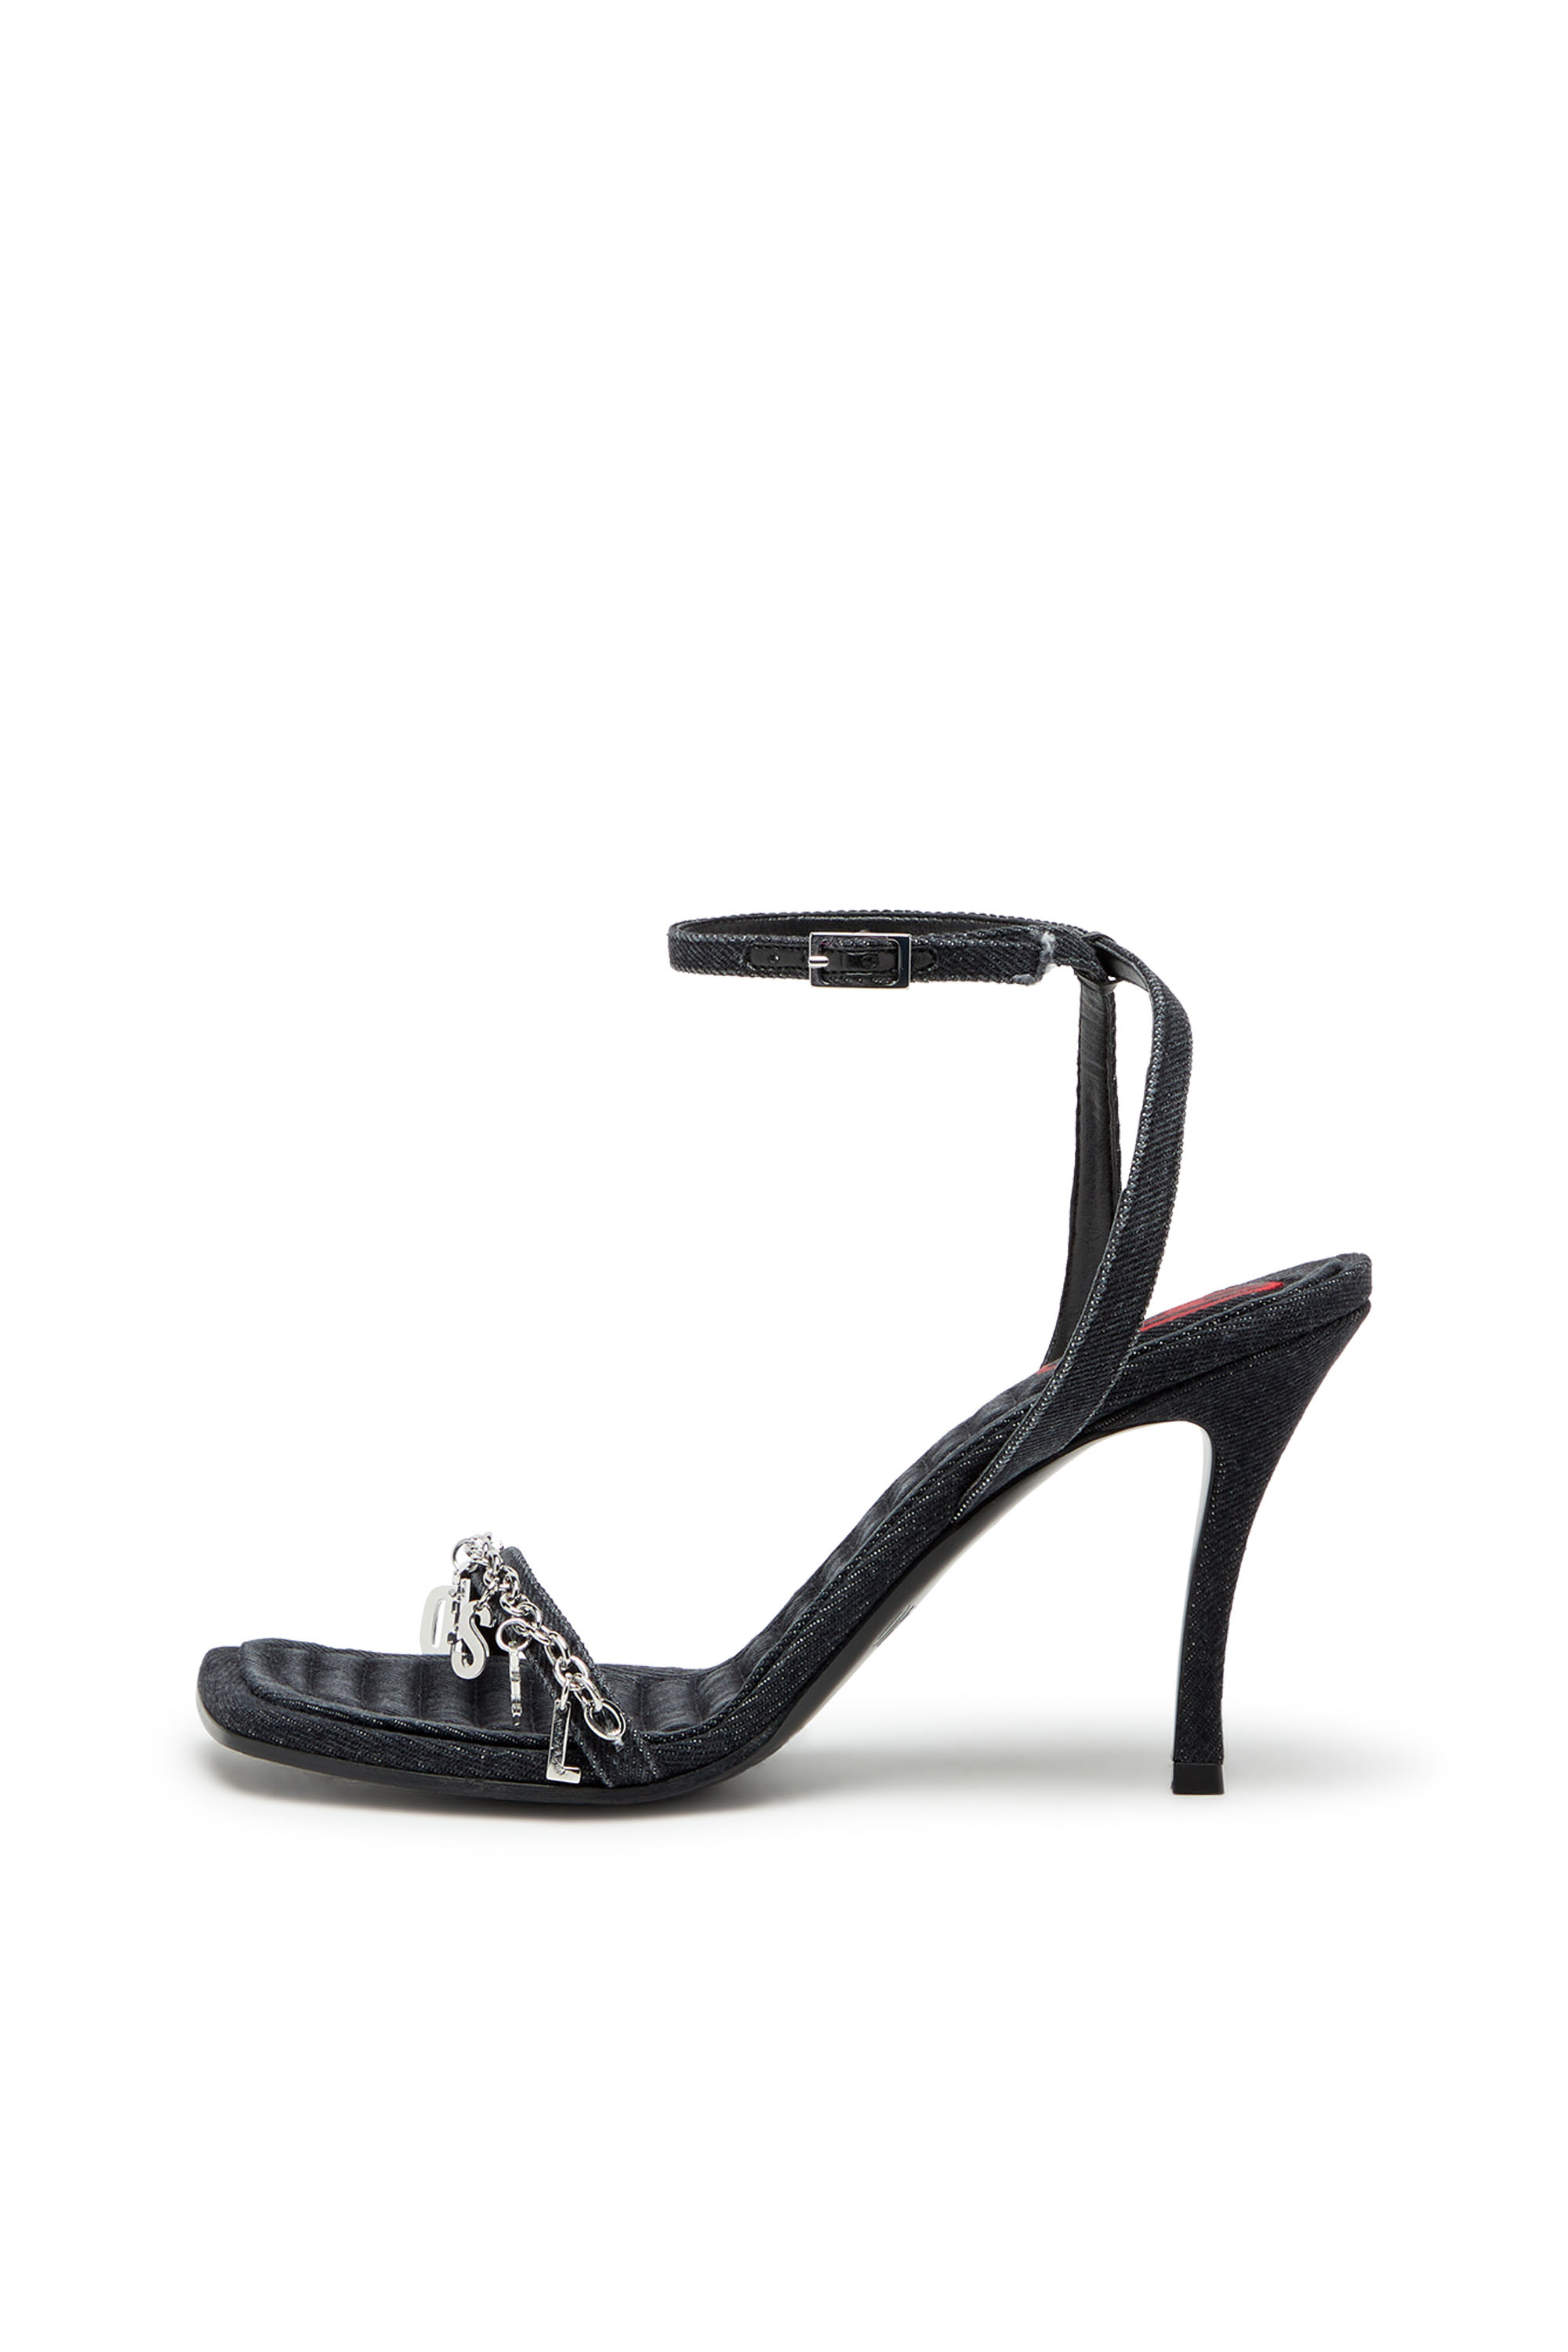 Diesel - D-VINA SDL, Woman D-Vina Sdl Sandals - Denim sandals with Diesel charms in Black - Image 7